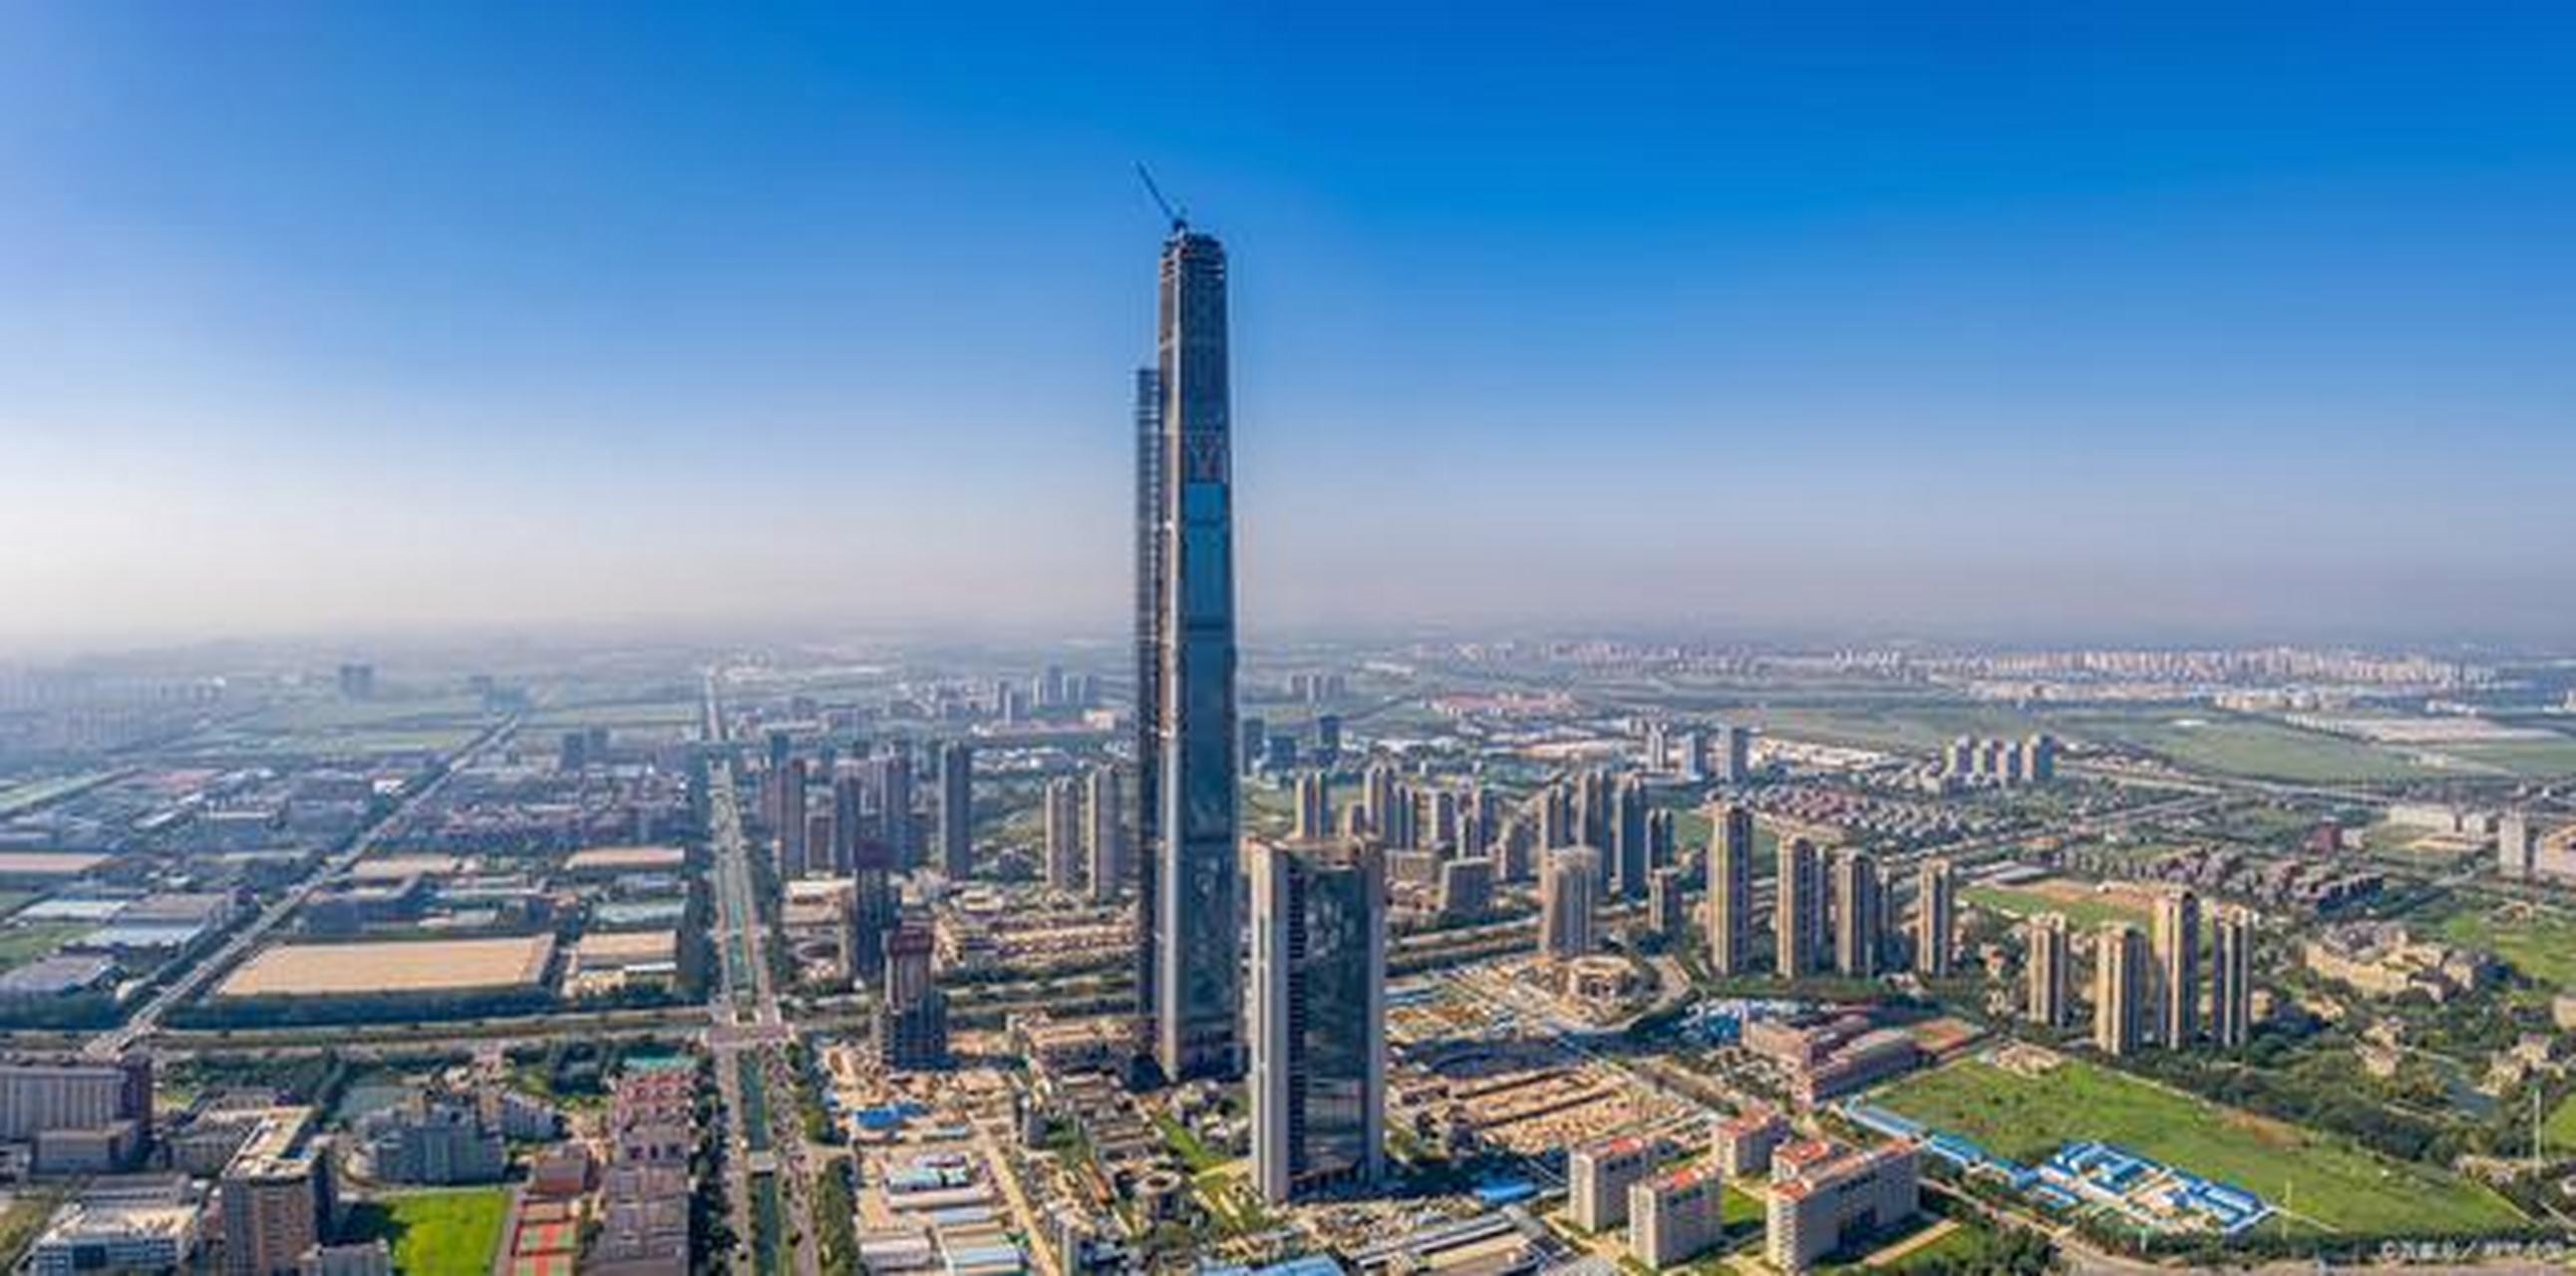 天津高银金融中心图片